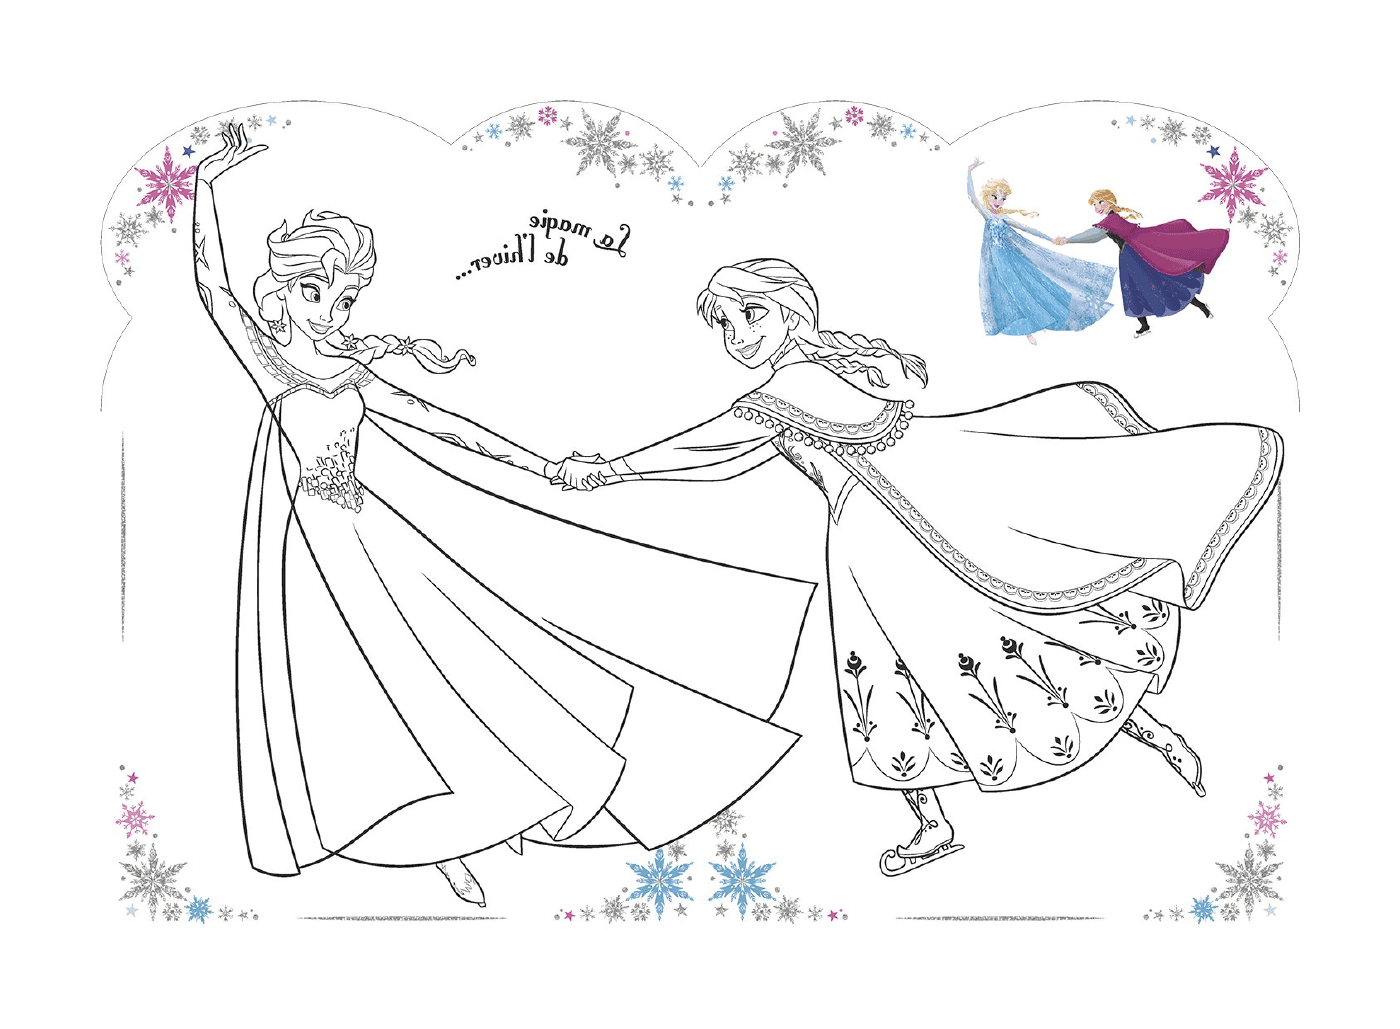   La magie de l'hiver avec Elsa et Anna 